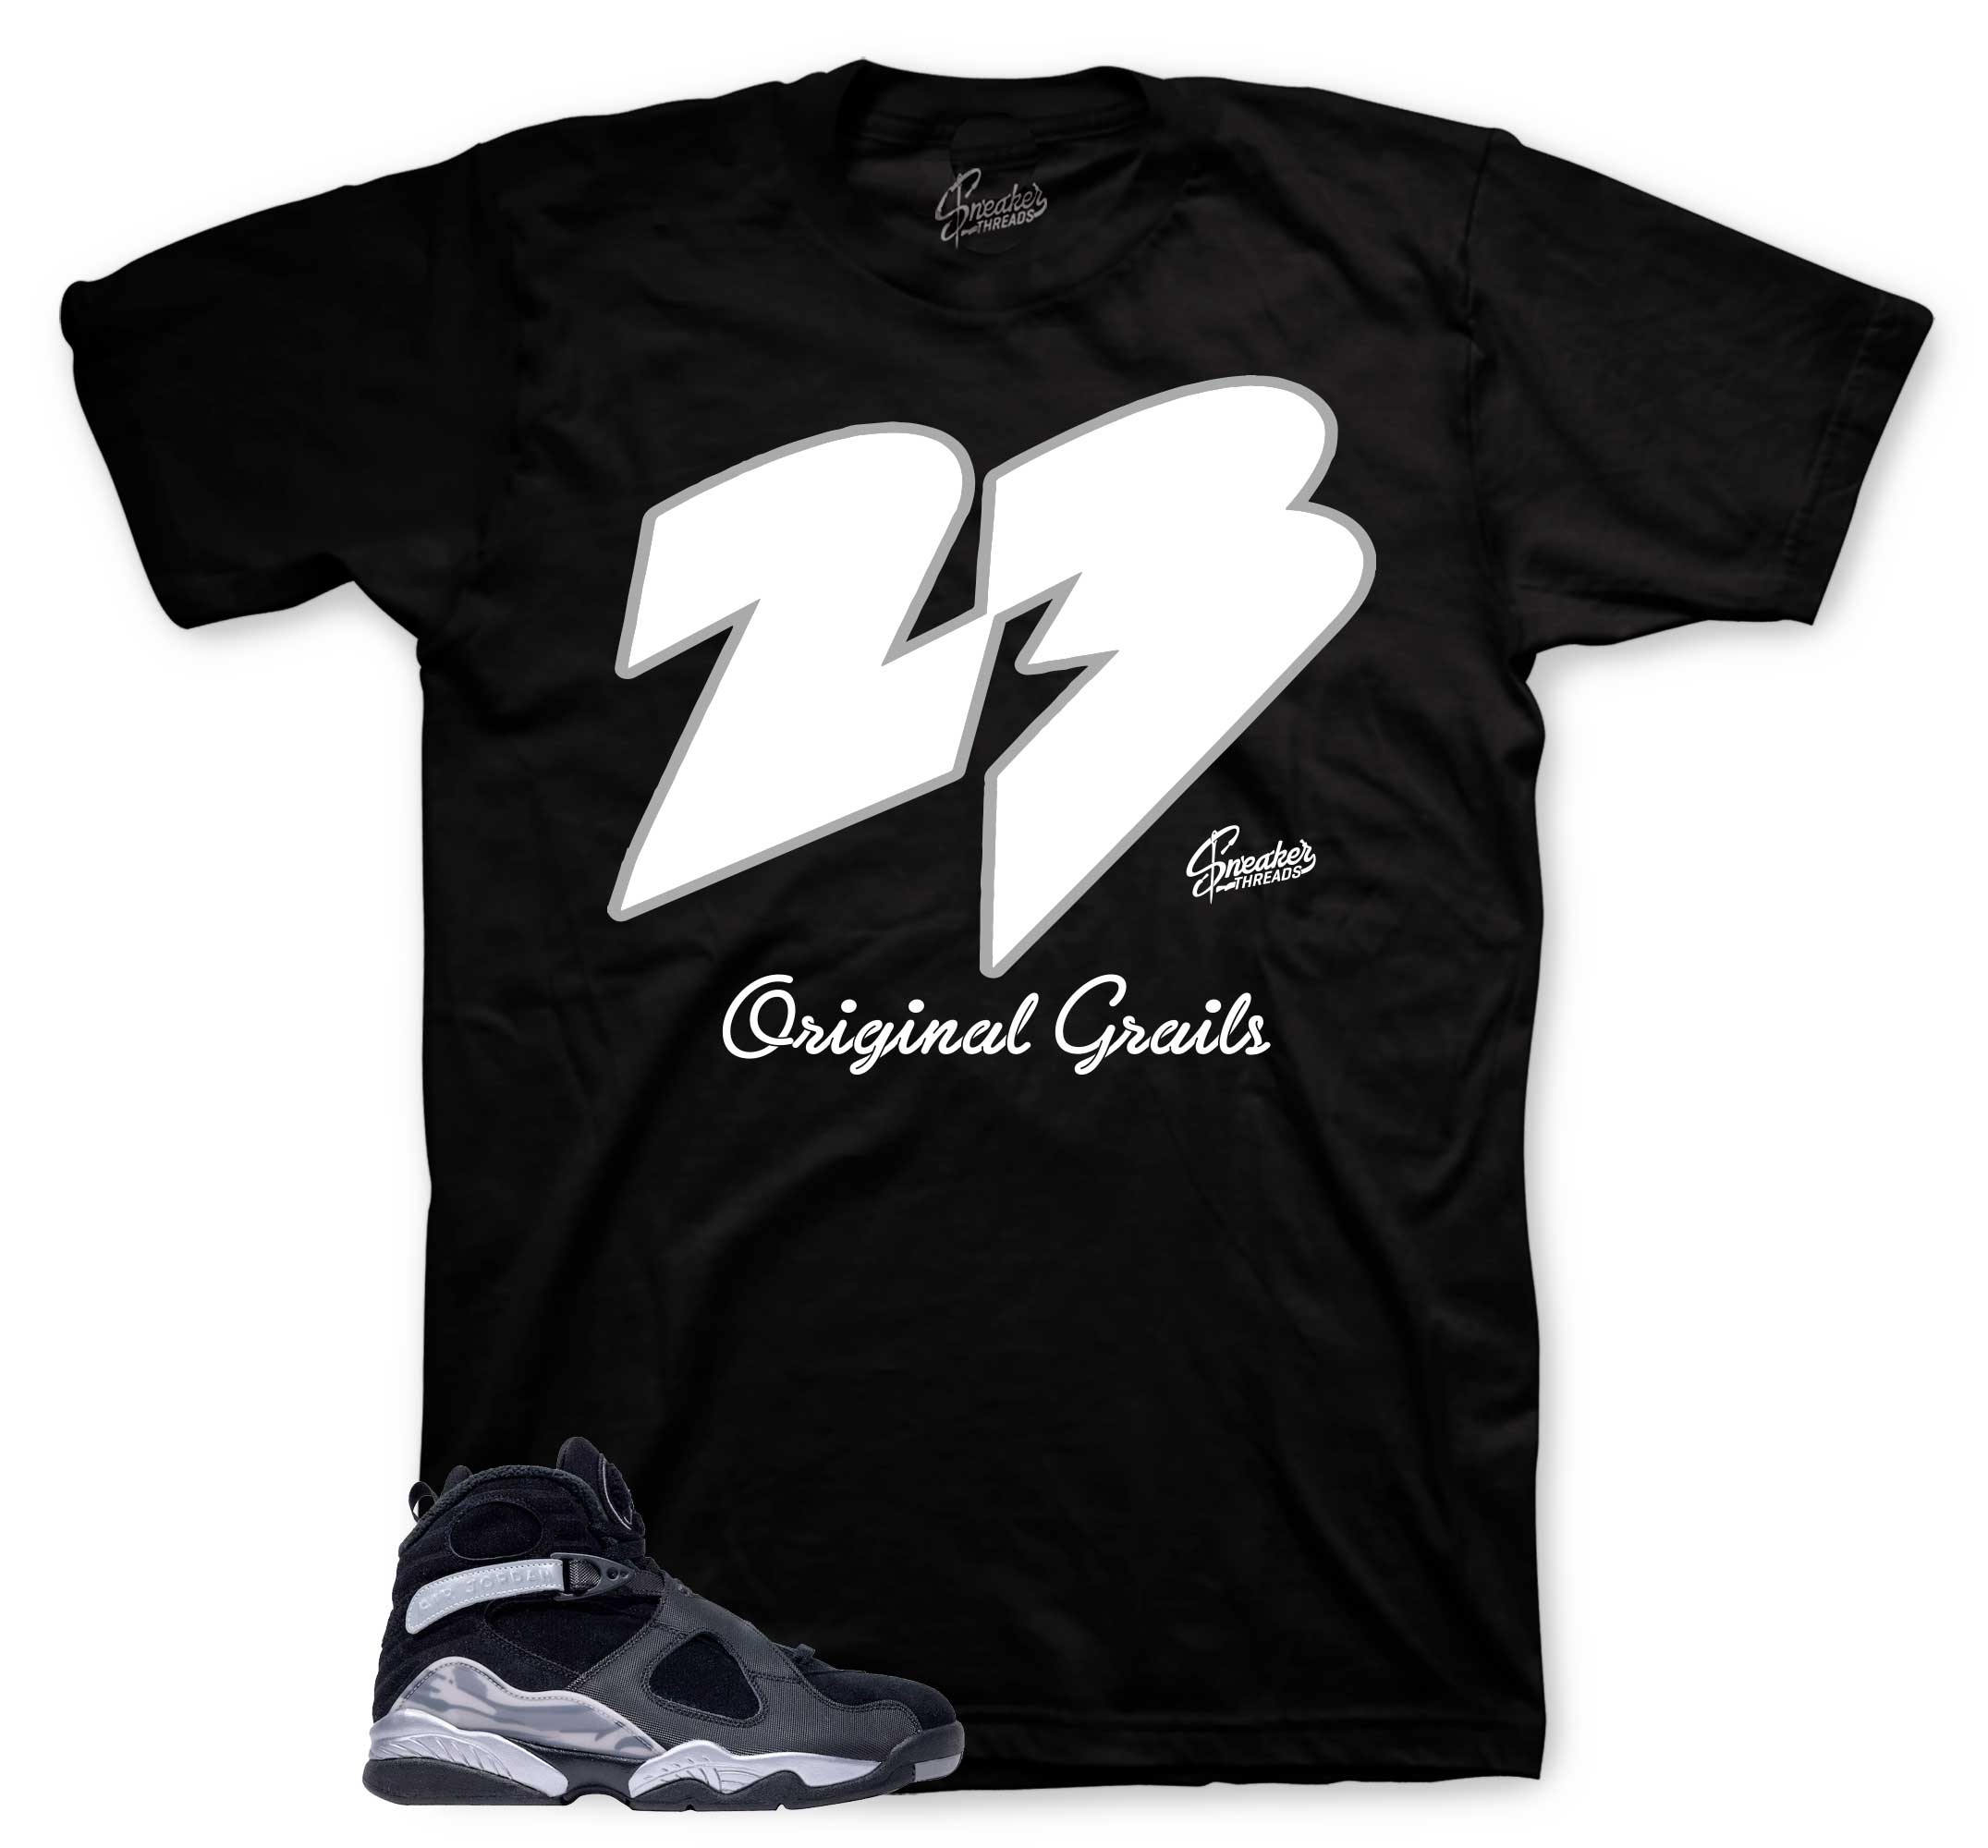 Retro 8 Smoke Grey Shirt - Original Grails - Black